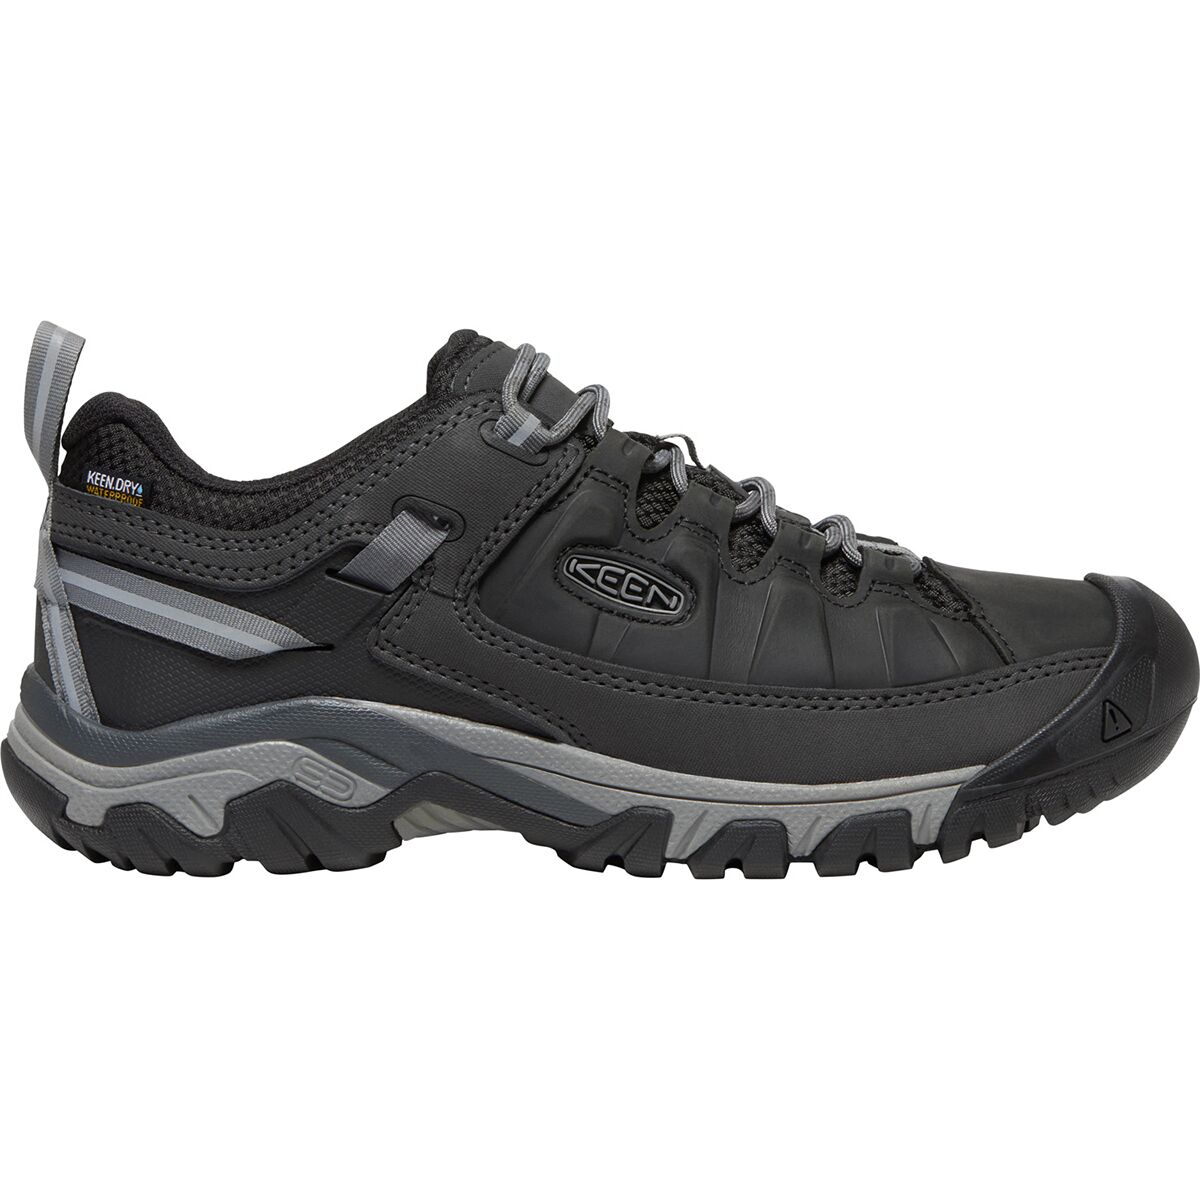 KEEN Targhee III Waterproof Leather Hiking Shoe - Men's - Footwear